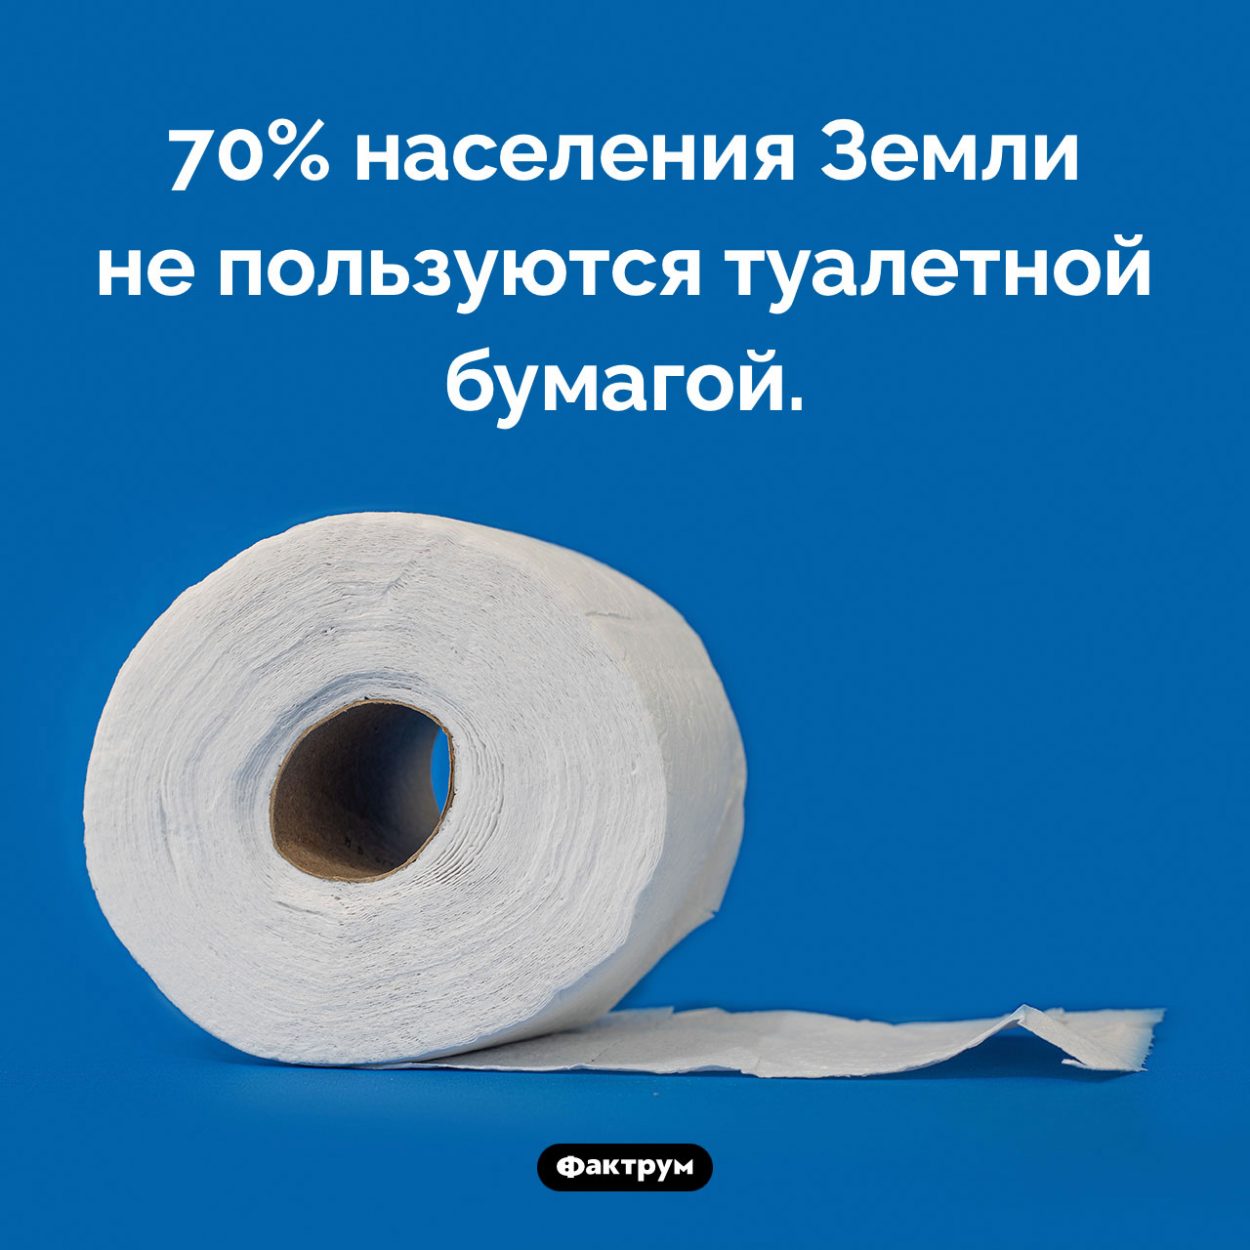 Сколько людей не пользуются туалетной бумагой. 70% населения Земли не пользуются туалетной бумагой.